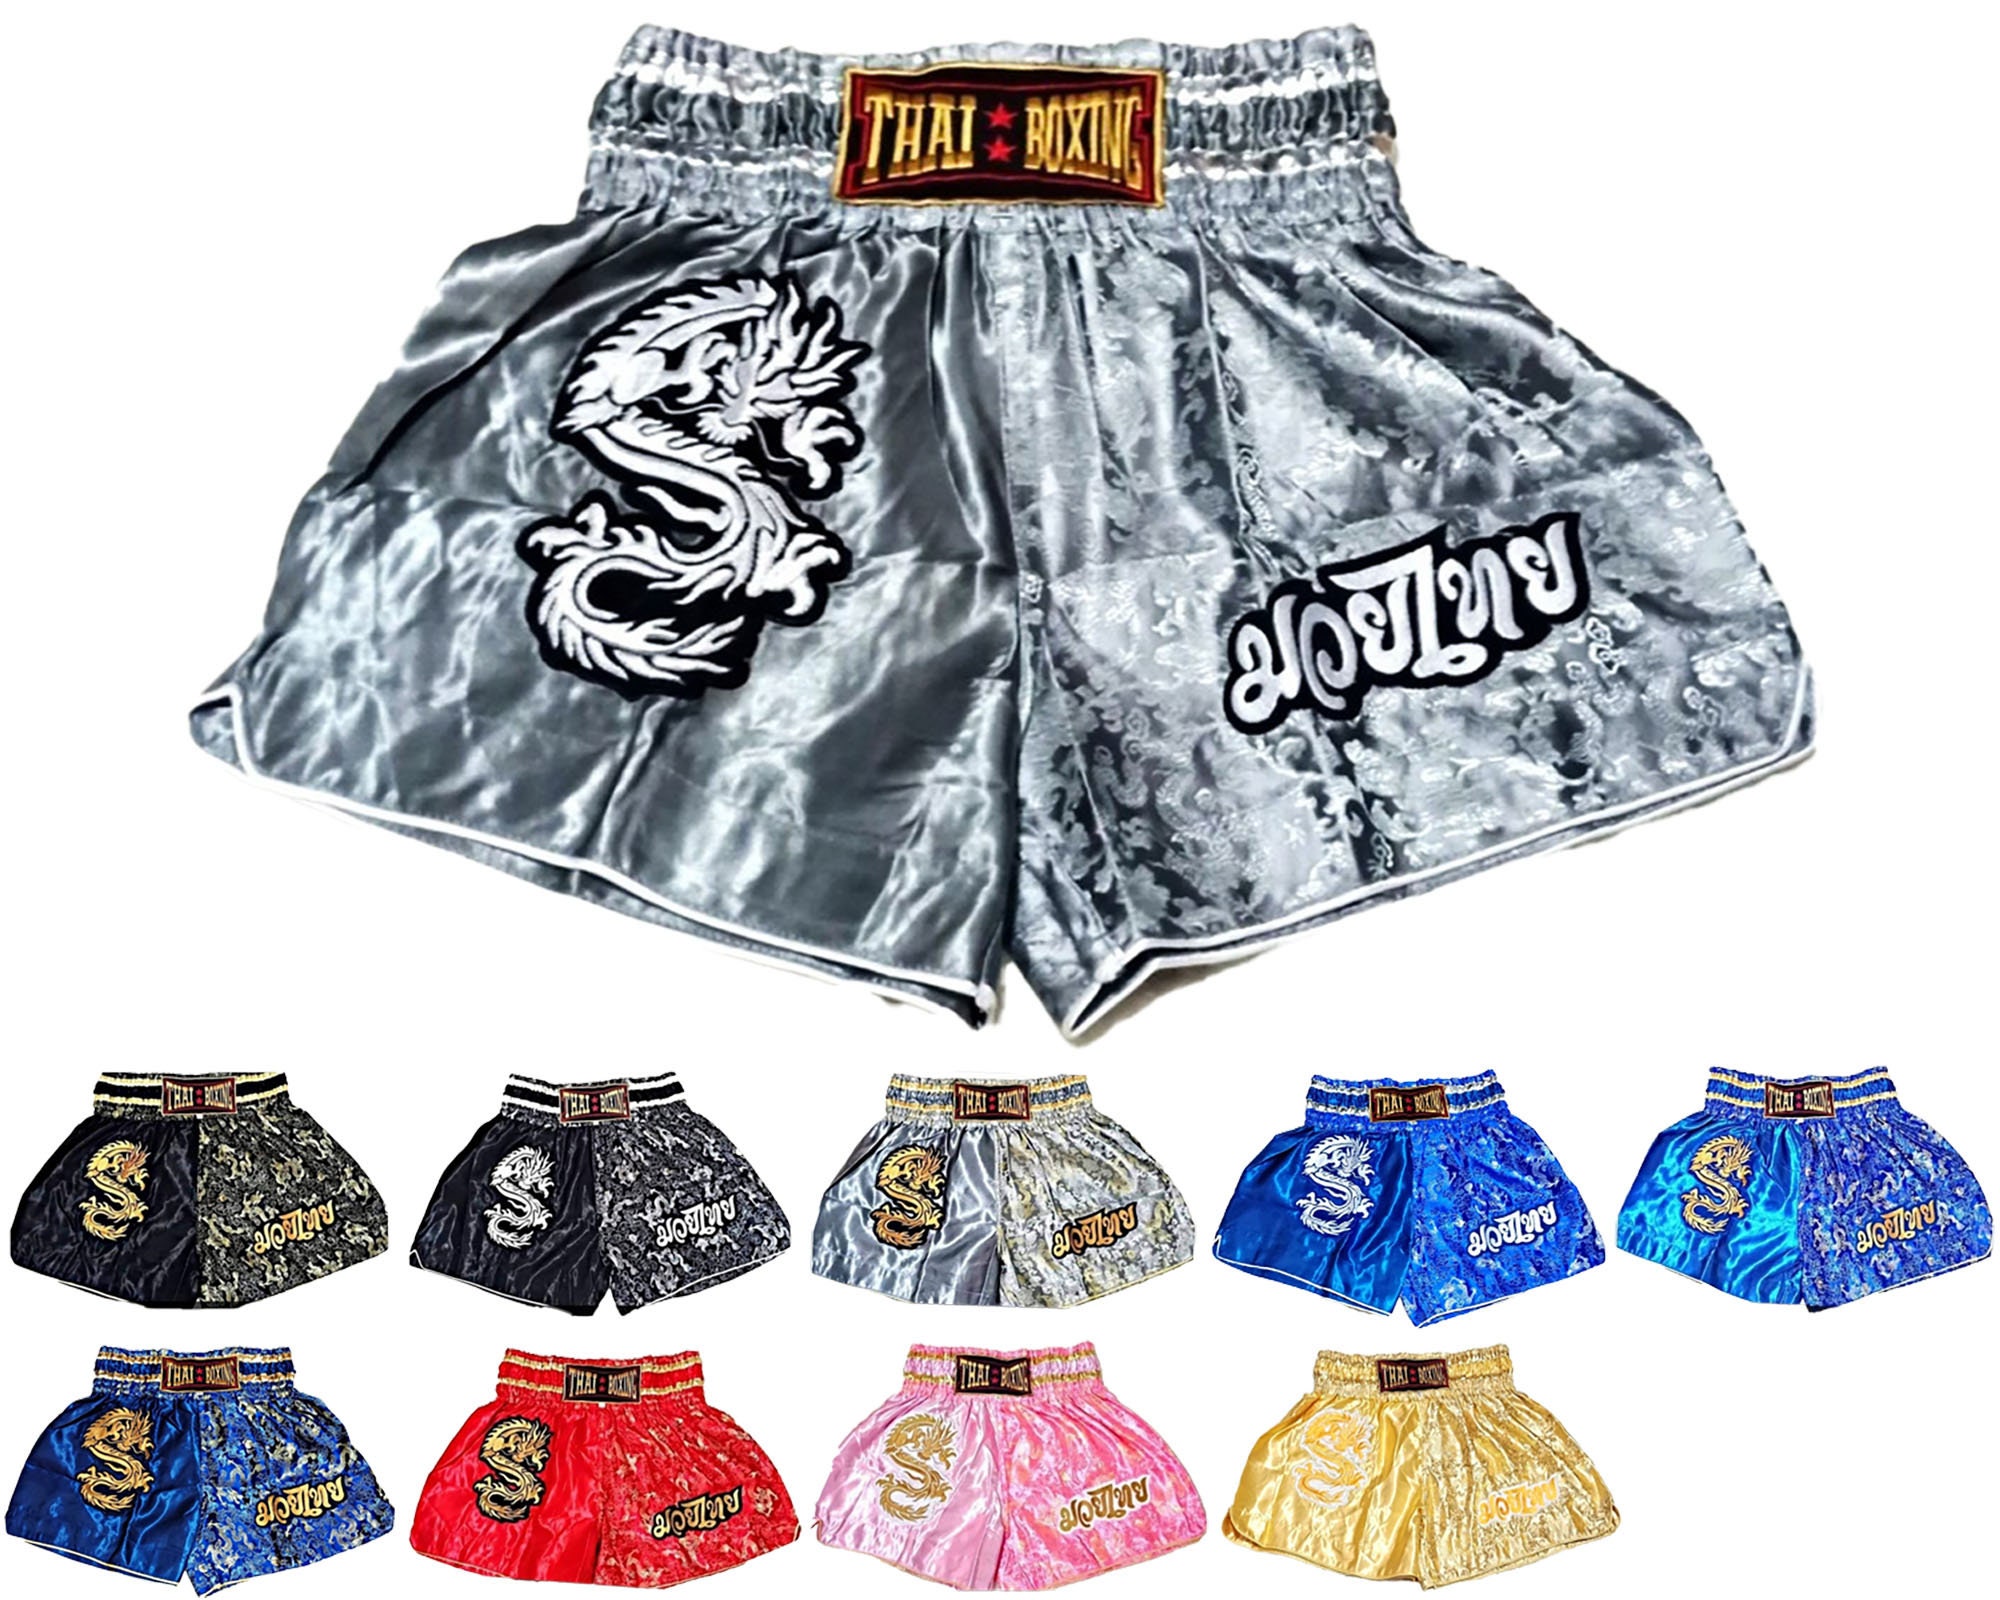 Comment taille les shorts de boxe thai - lecoinduring